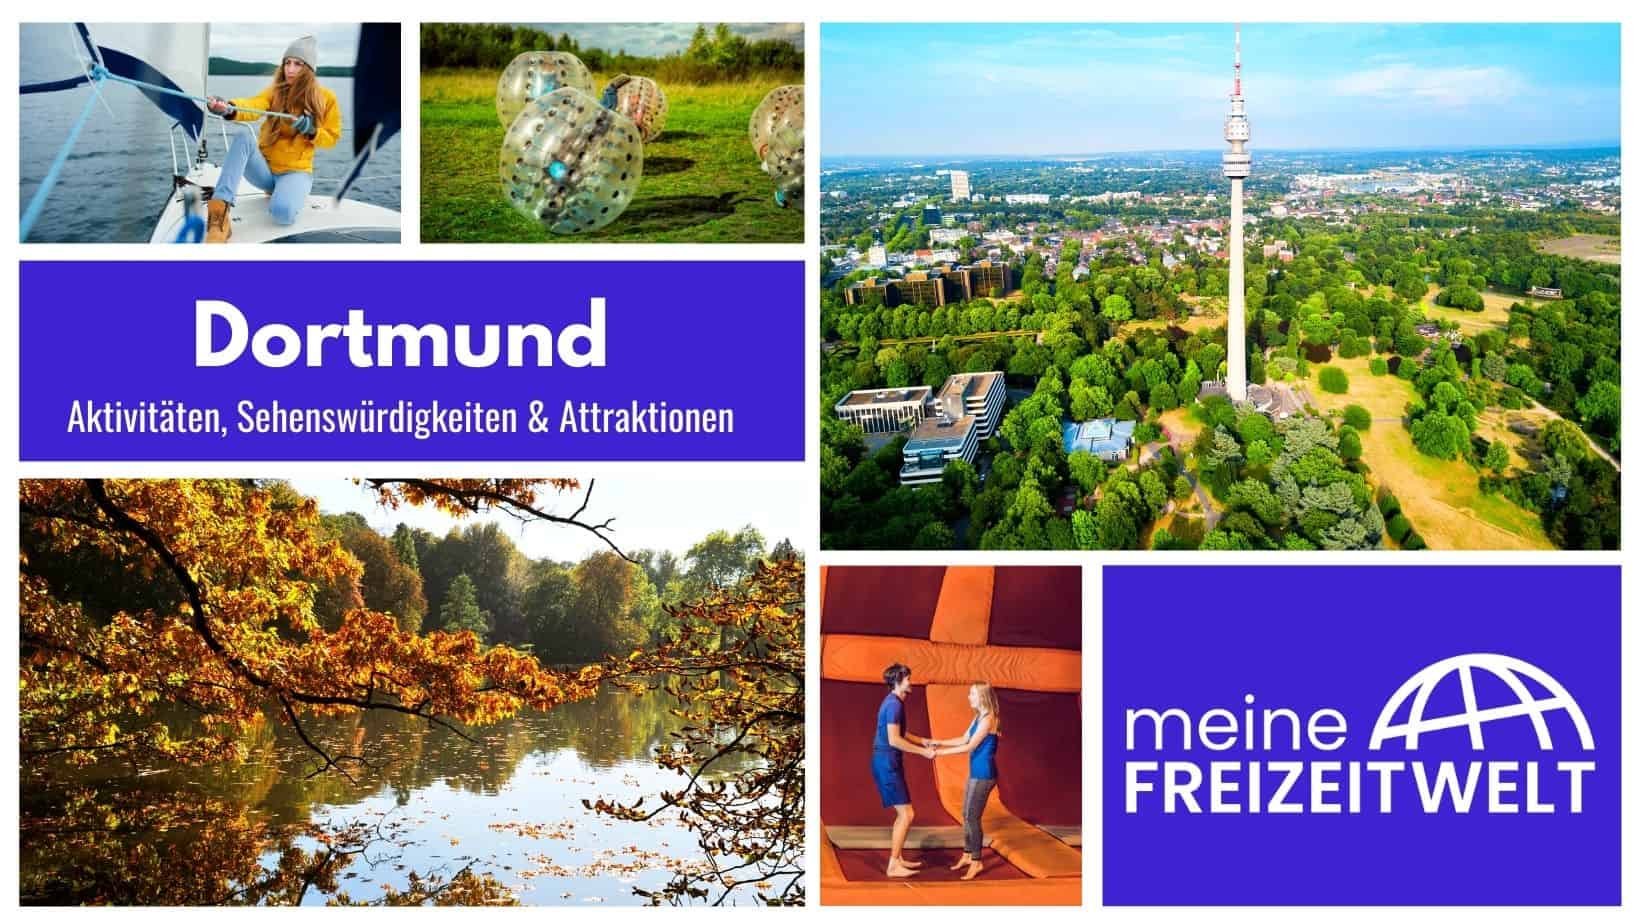 Dortmund Aktivitäten, Sehenswürdigkeiten & Attraktionen